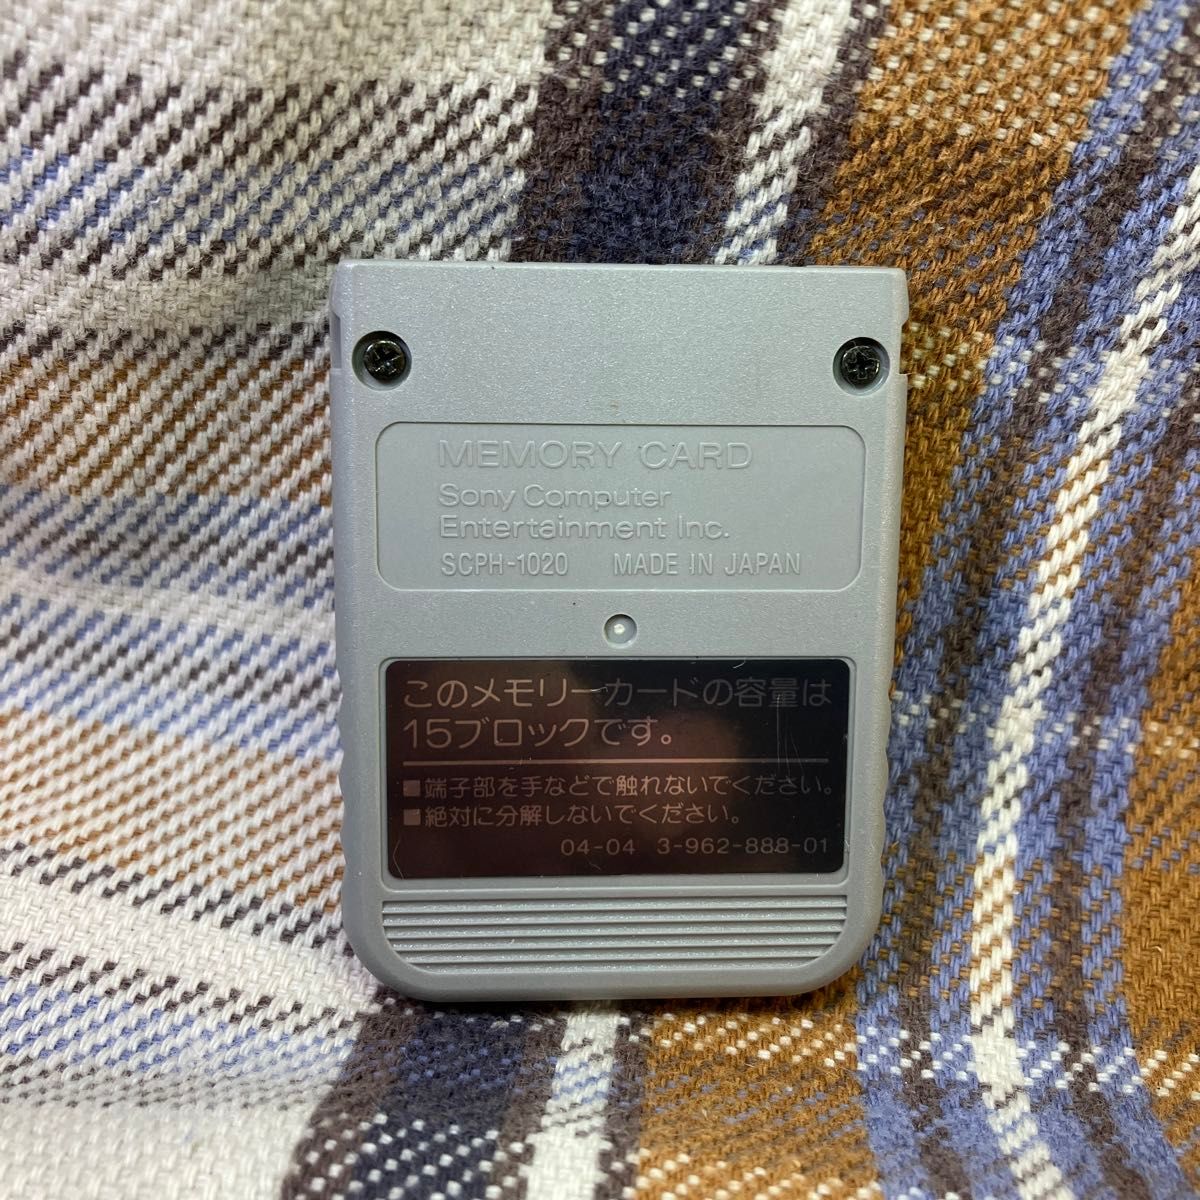 p110 PS1メモリーカード15ブロック 1個 ソニー純正 動作確認初期化済 プレイステーション SONY